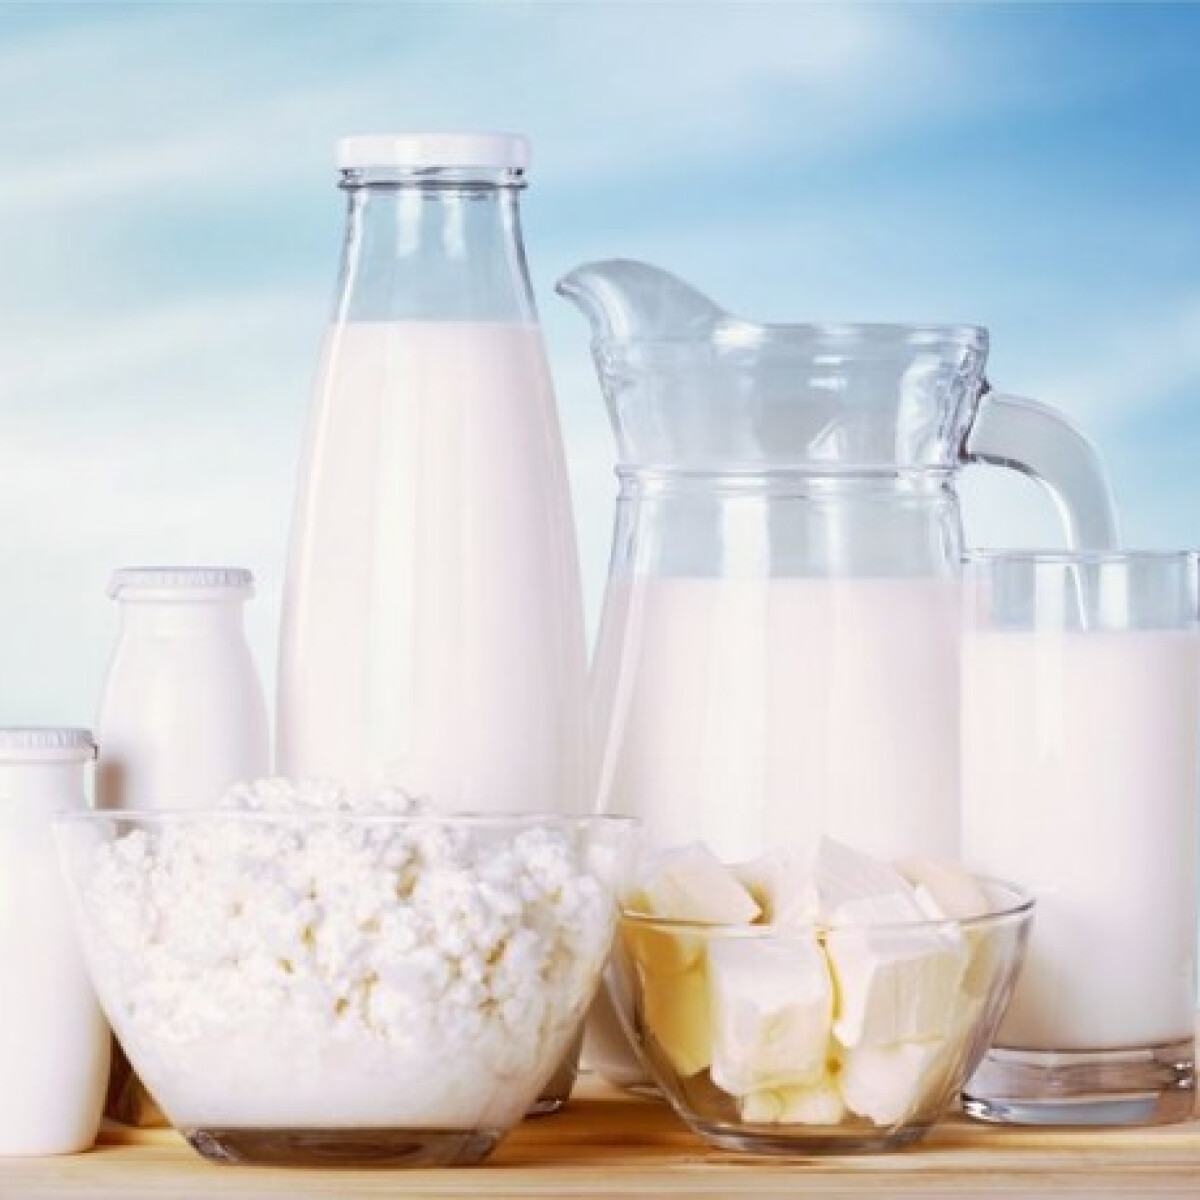 Így változhatnak a tejtermékek árai - Hullámvasúton a tejpiac